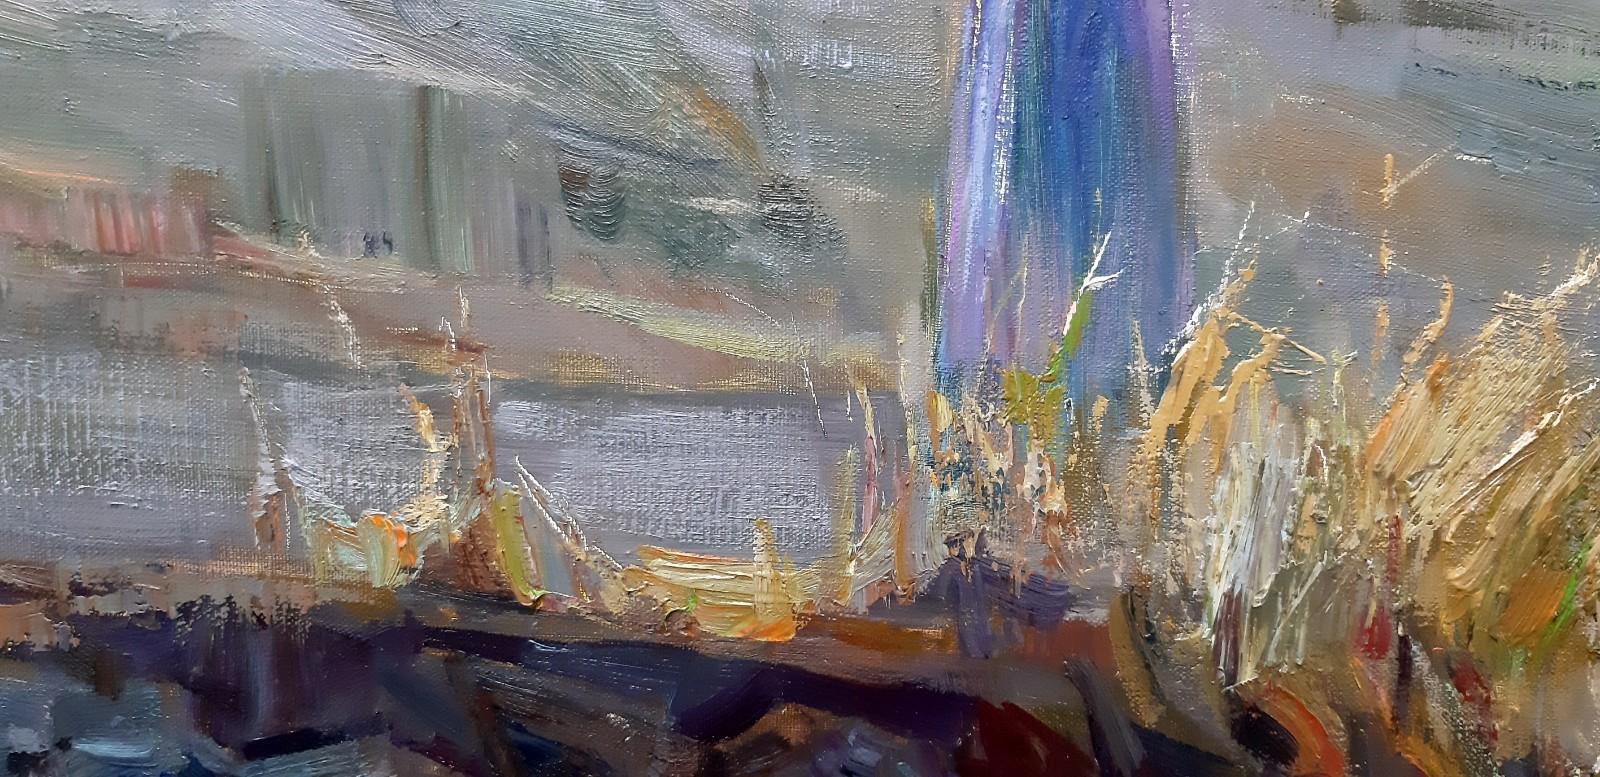 Uchisar coucher de soleil - Peinture à l'huile de paysage jaune, bleu, blanc, vert, rouge, brun pâle - Impressionnisme Painting par Alina Khrapchynska